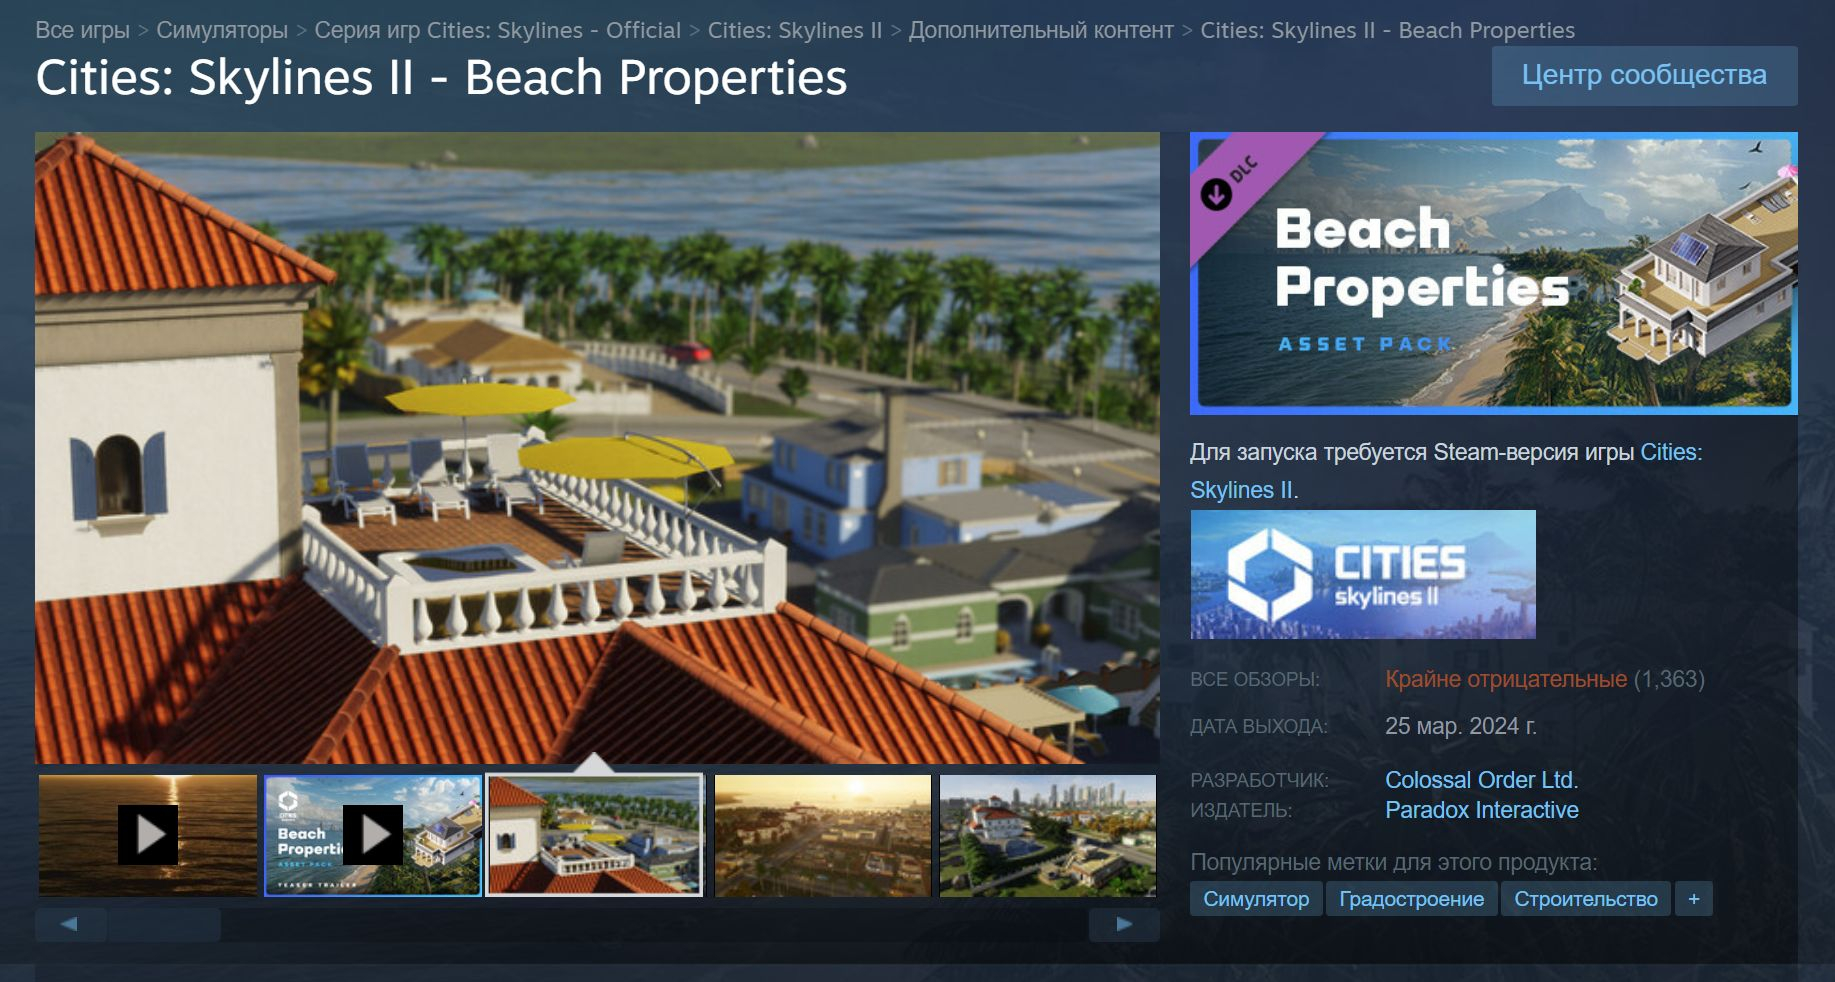  Beach Properties «по запросу издателя больше не показывается в магазине Steam и результатах поиска». 